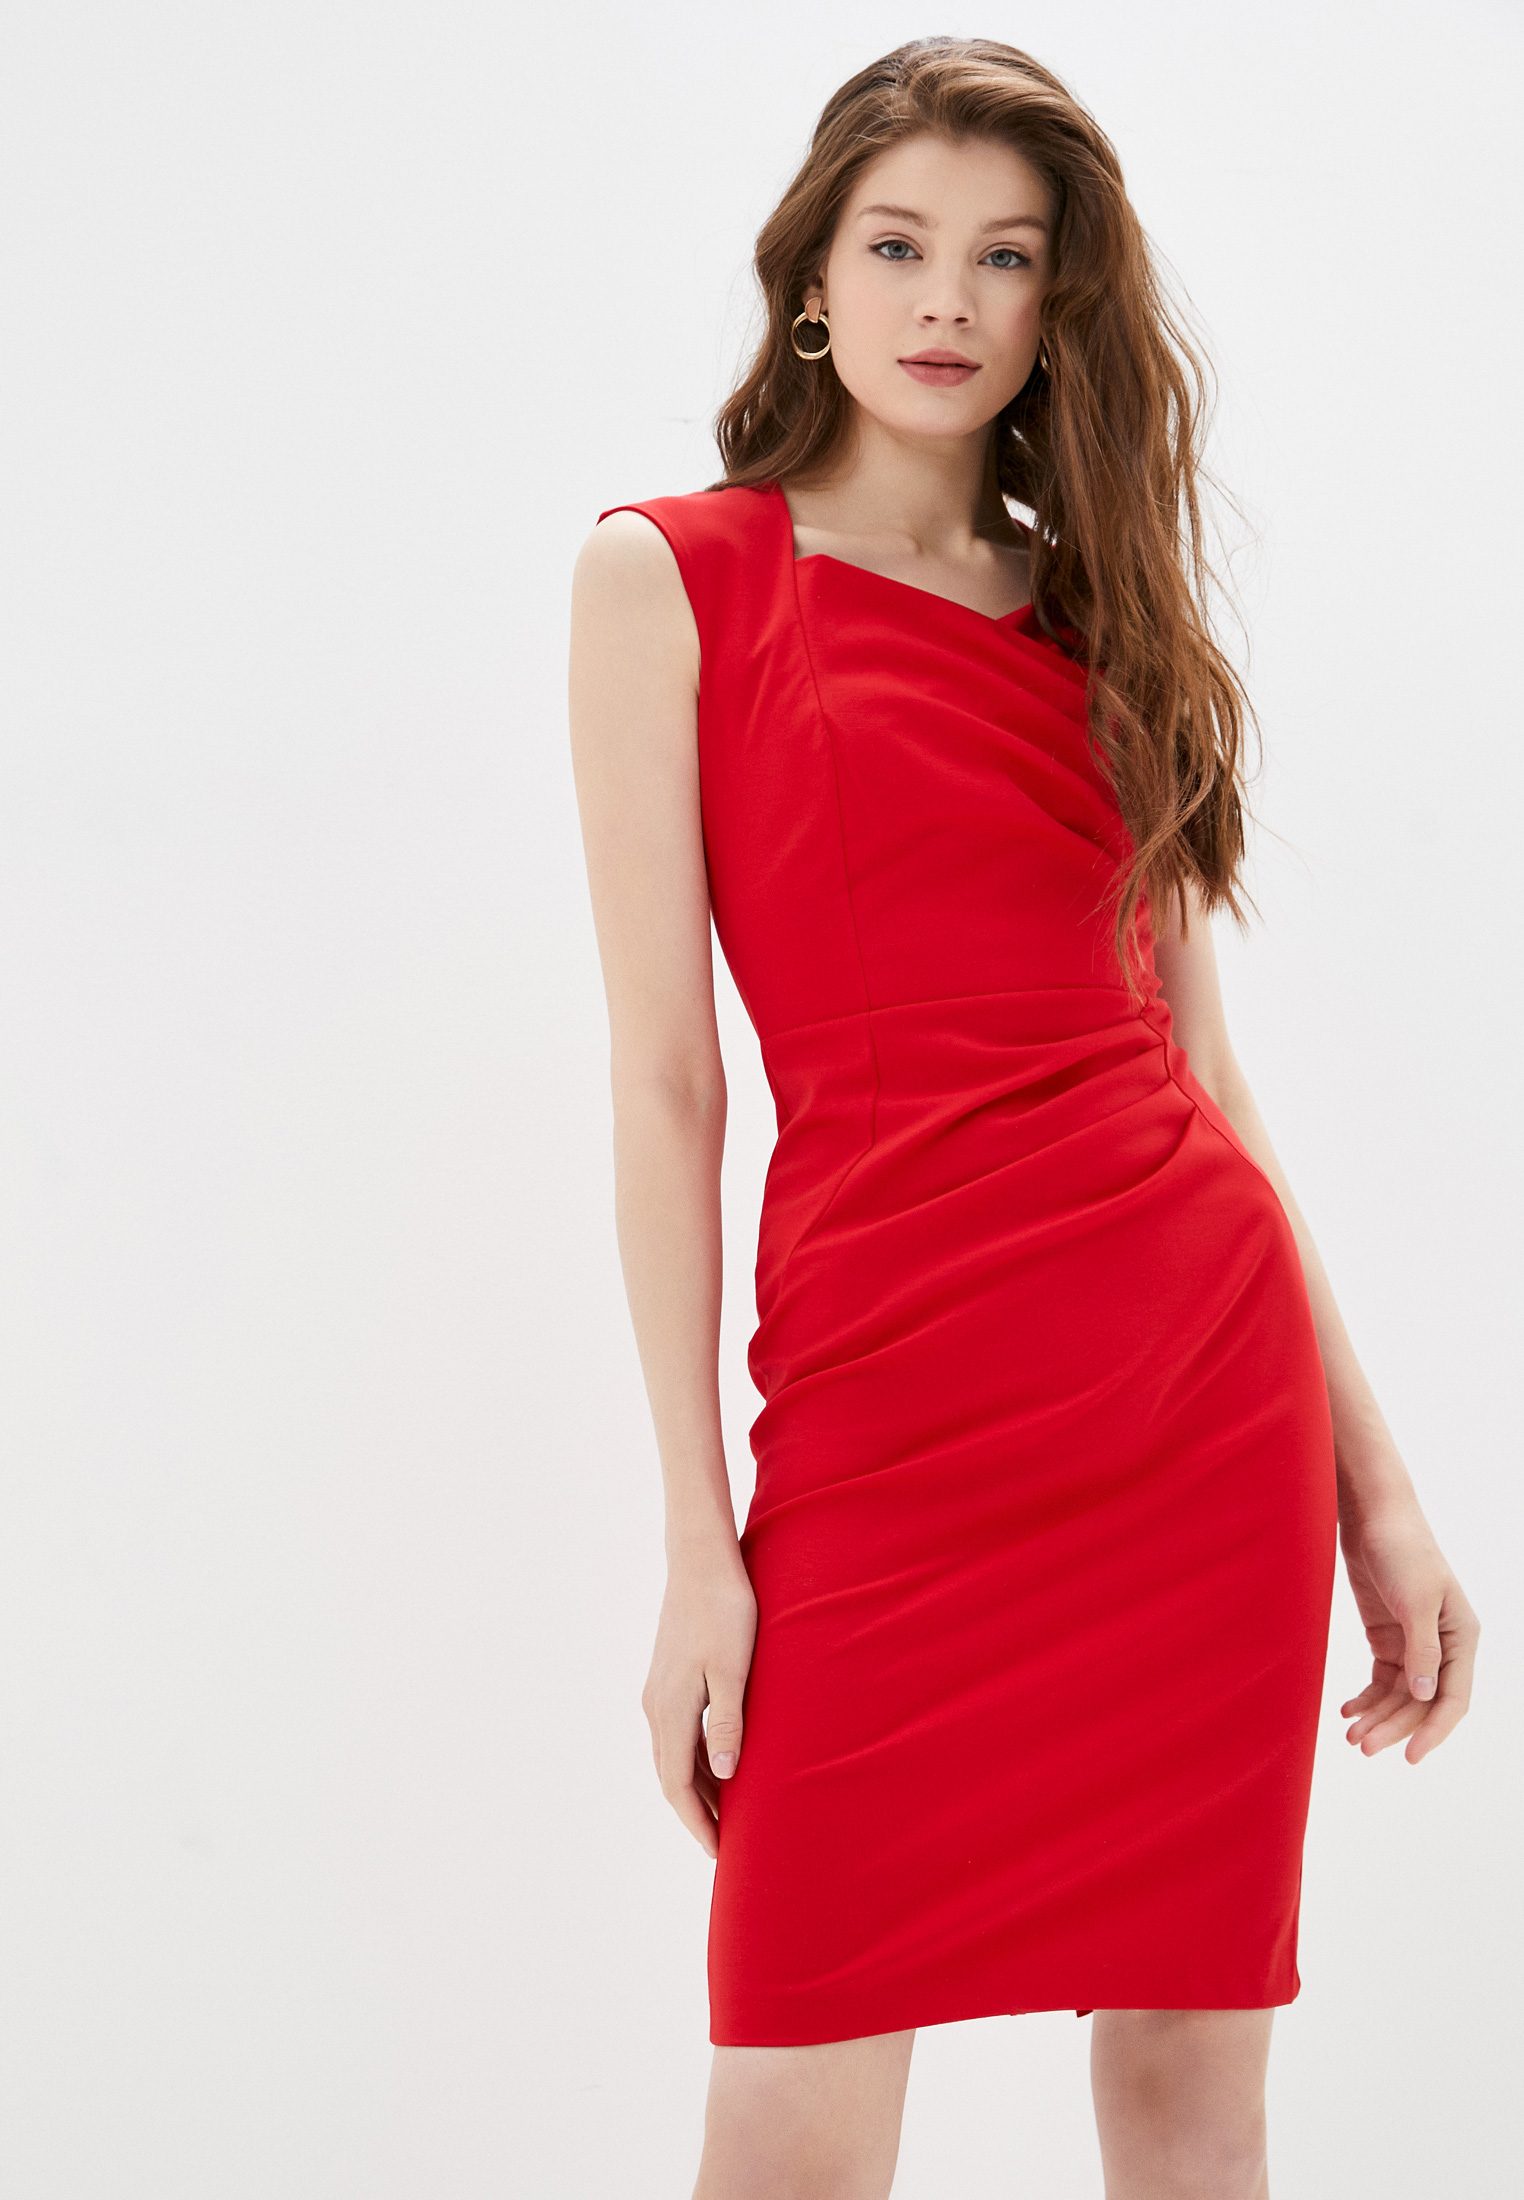 Ri red. Платье Rinascimento красное. Платье Ринашименто. Ринашименто купить.